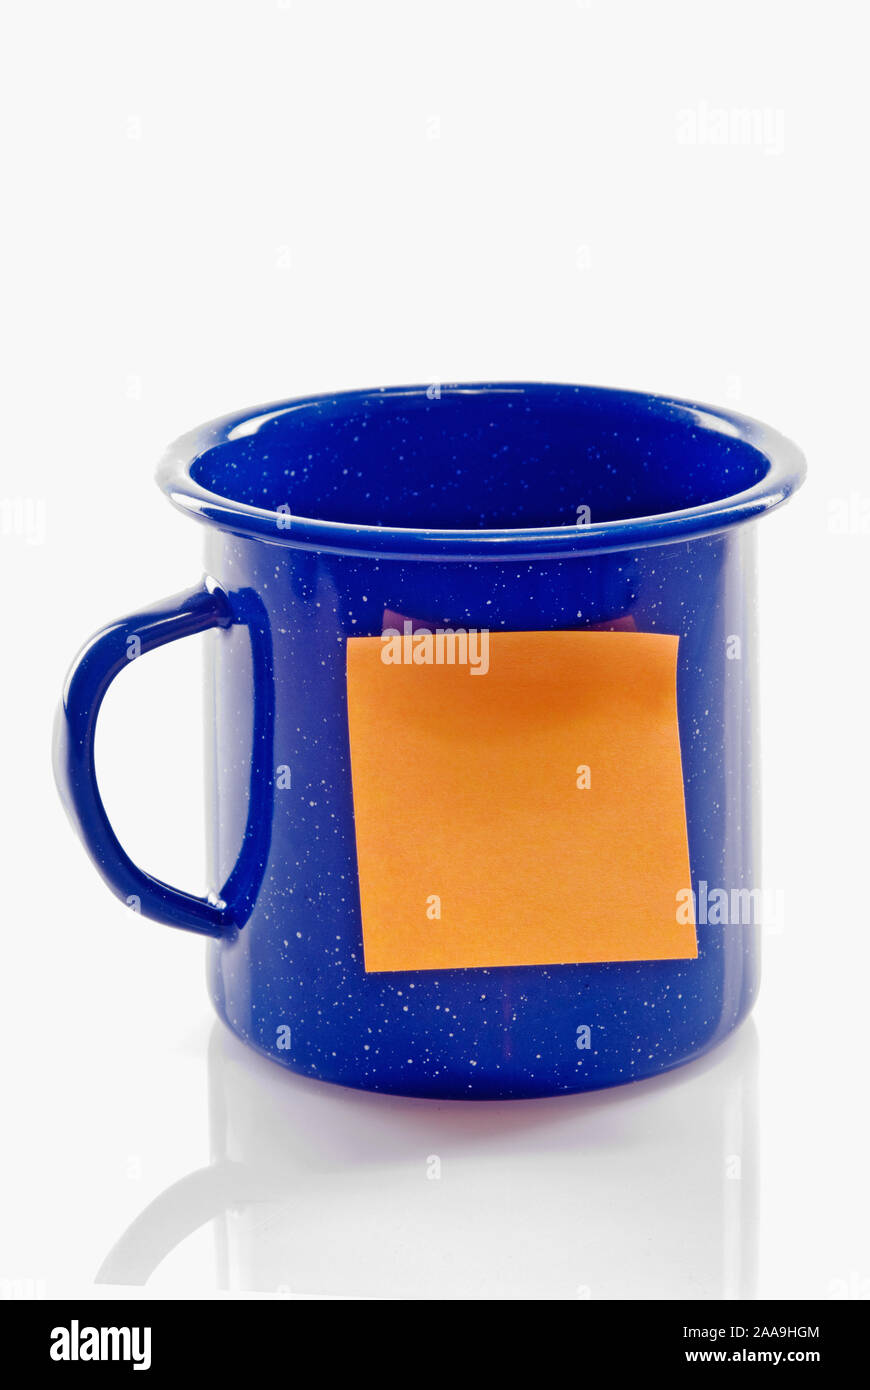 Nettoyer l'étain de couleur bleu vide la tasse de café camping avec un carré de couleur orange adhésif collant blanc note sur l'avant. Banque D'Images